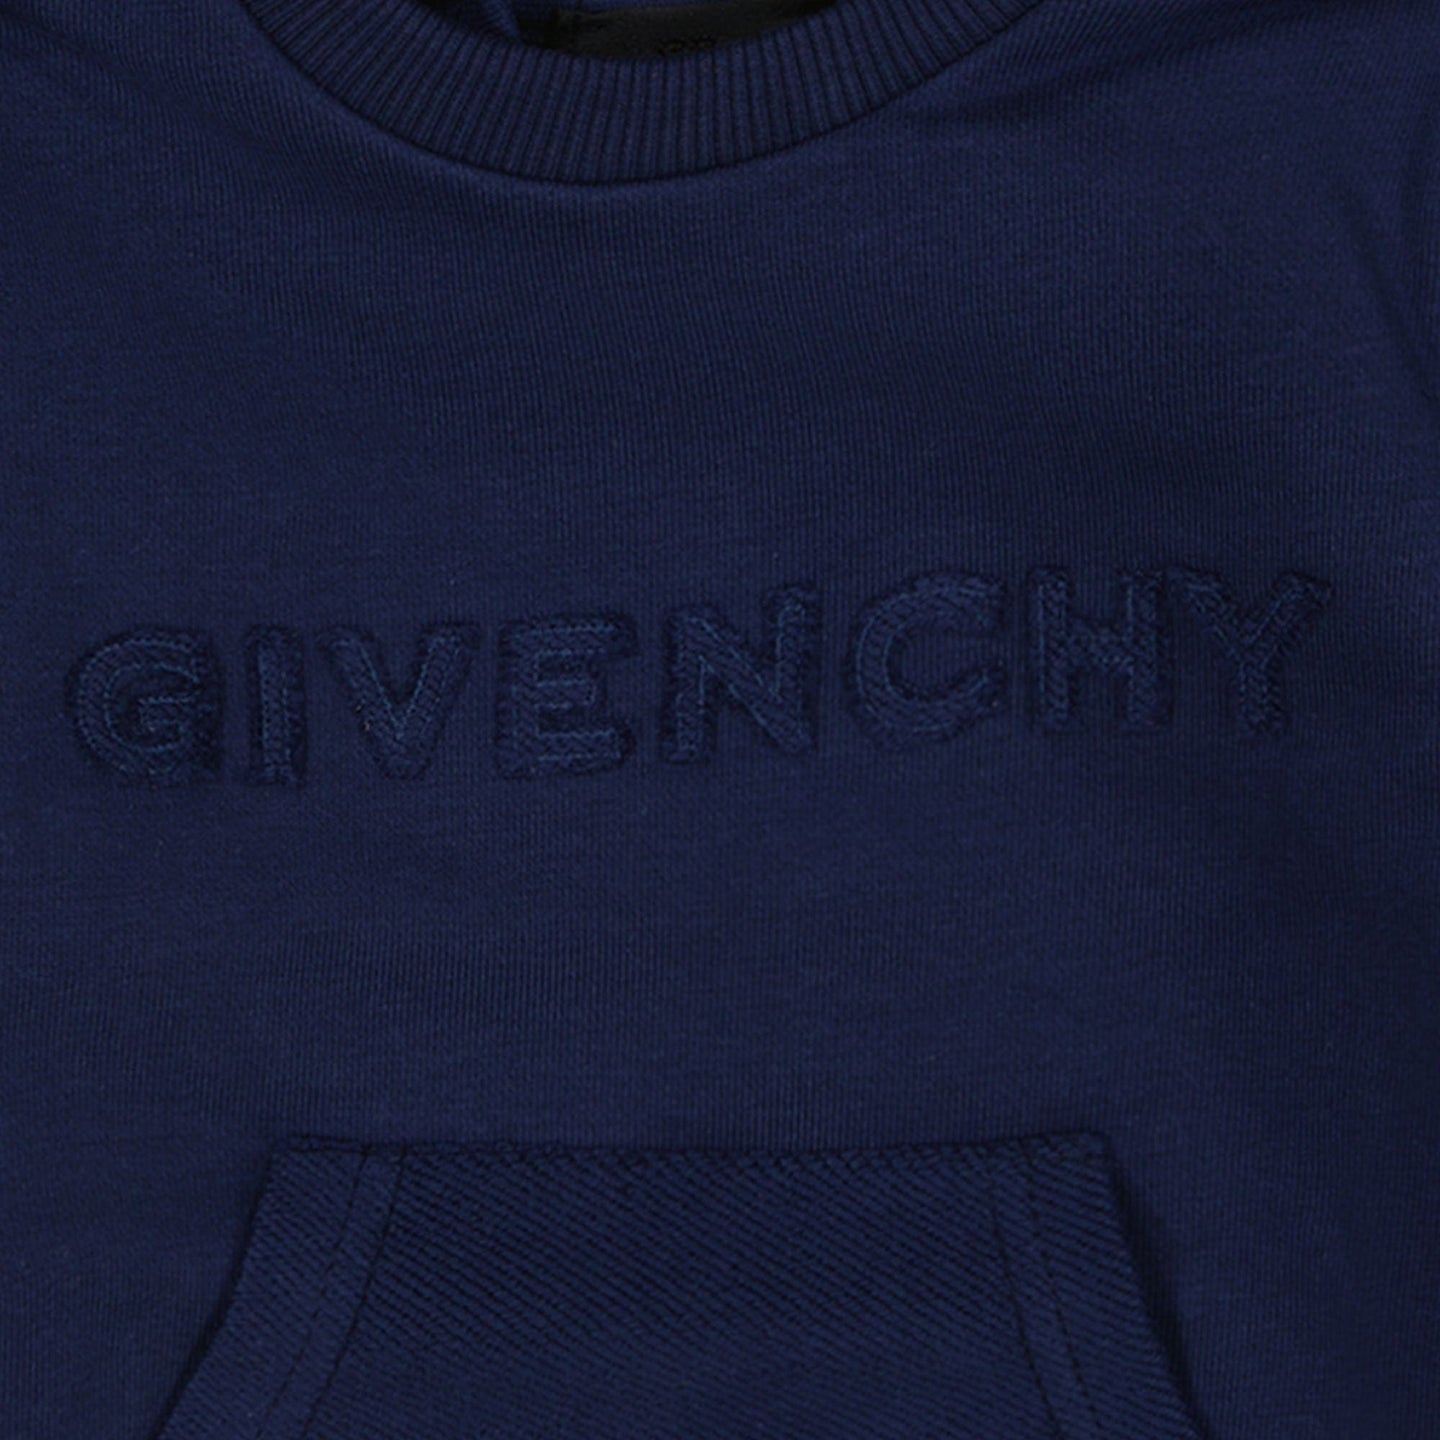 Givenchy Baby Jongens Trui Navy 6 mnd